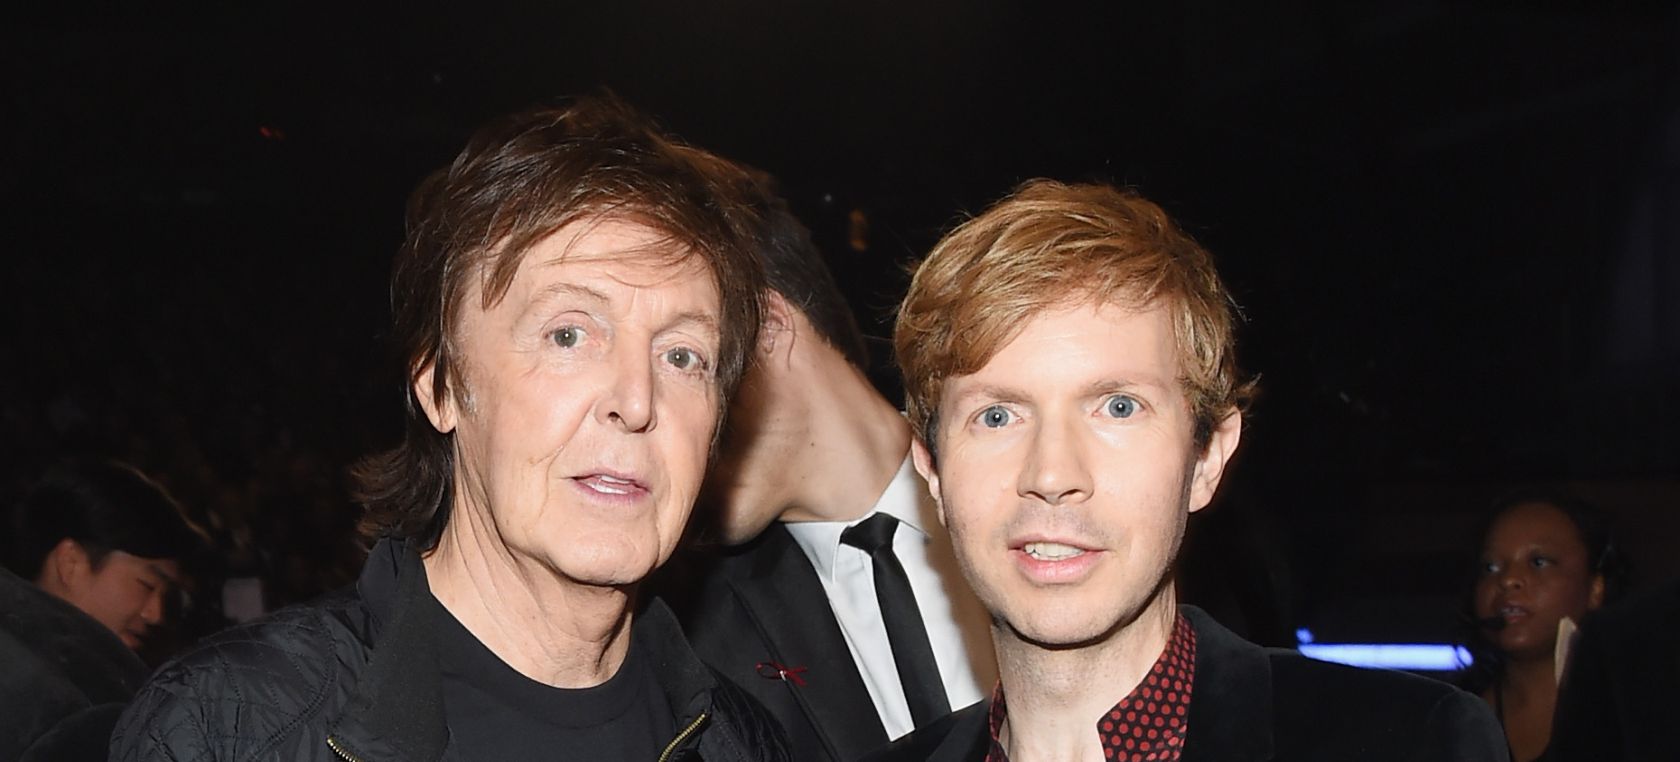 Paul McCartney se une a Beck para versionar uno de sus últimos temas